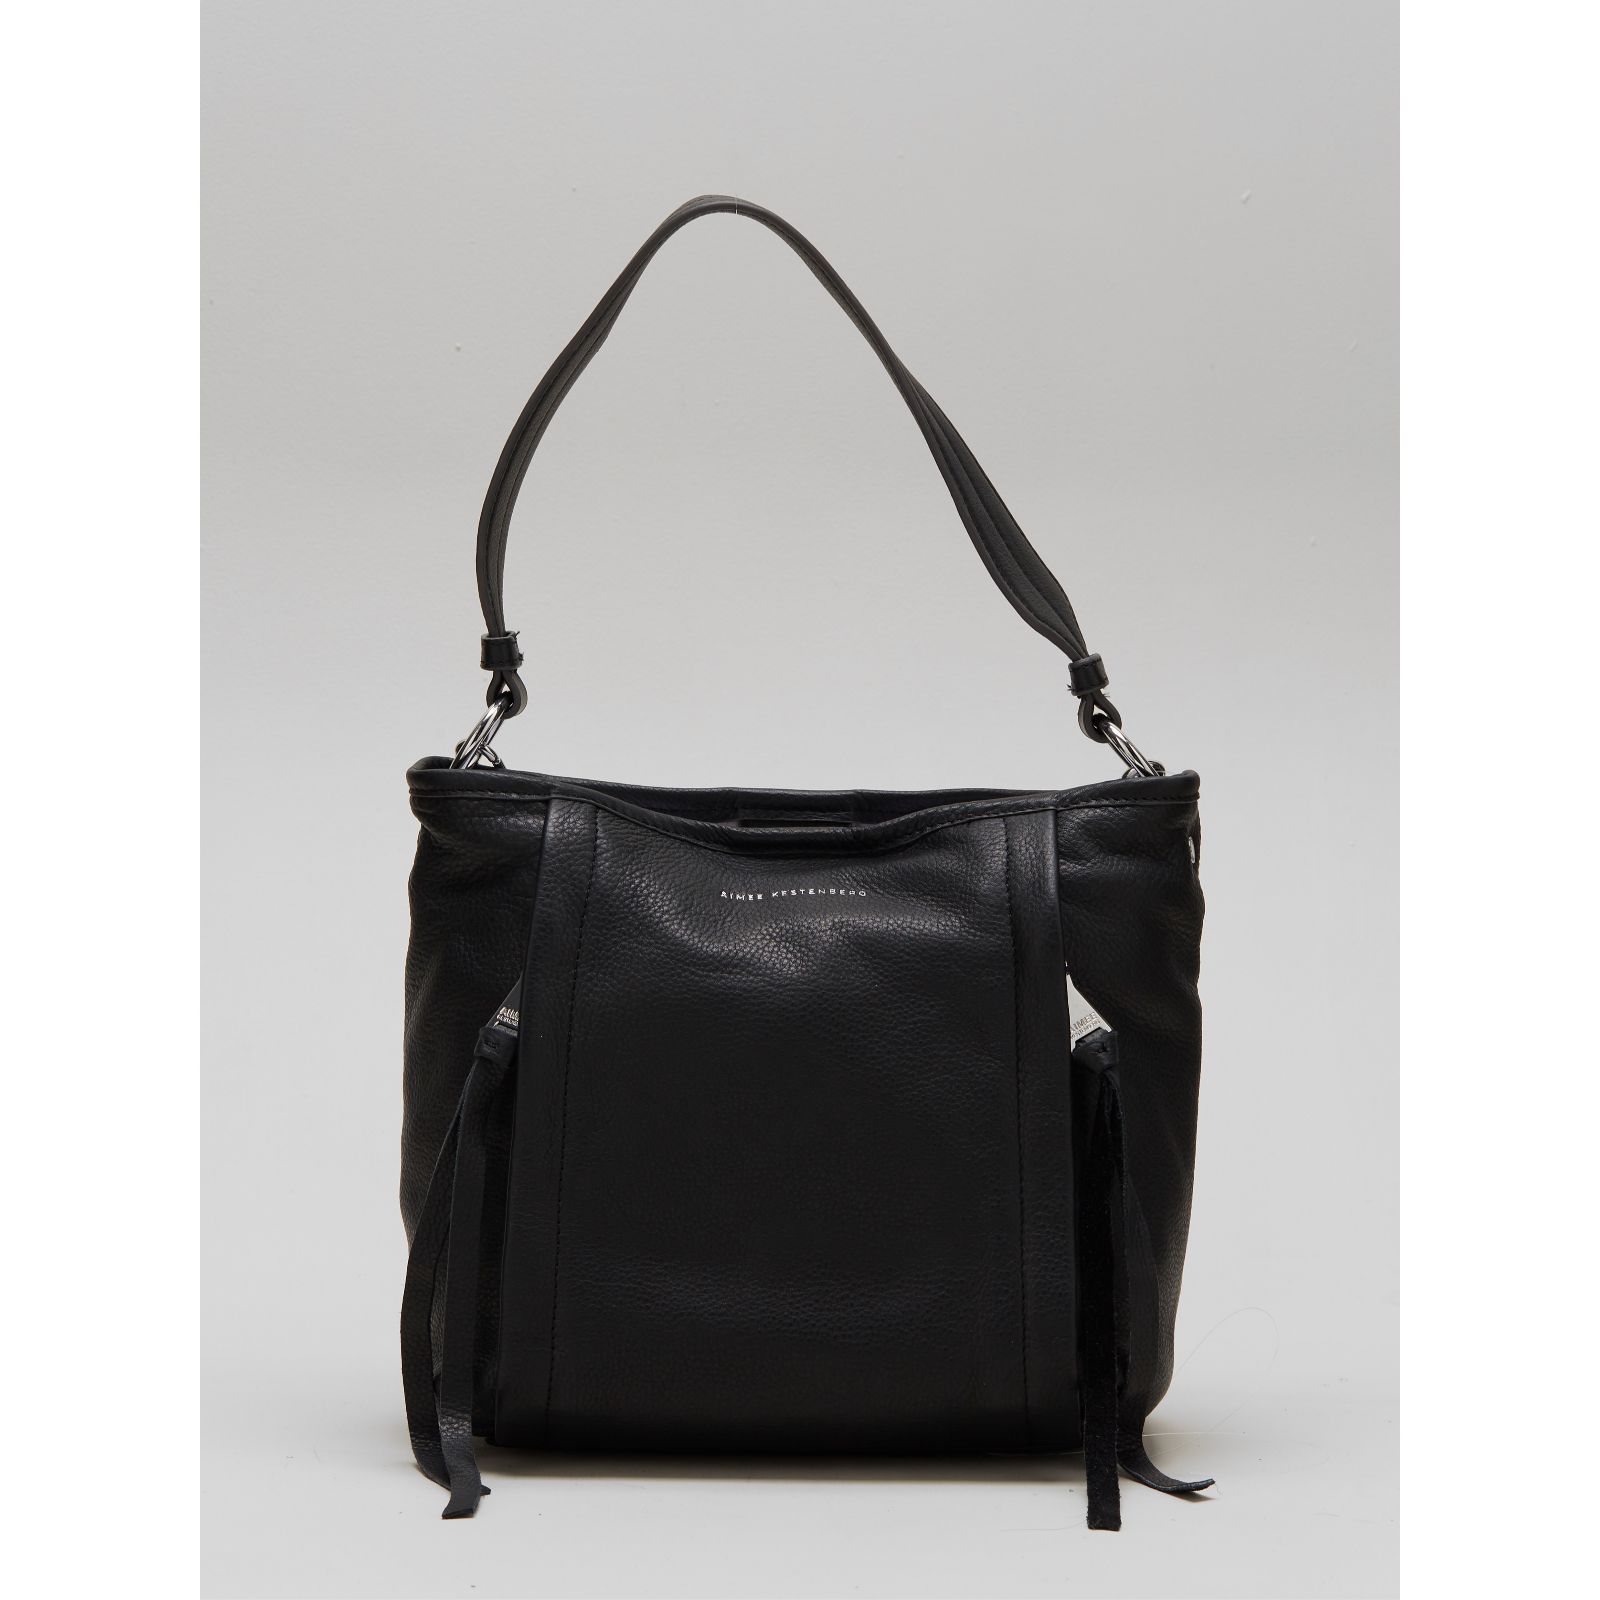 Aimee Kestenberg Women's Rocker Leather Bucket Bag